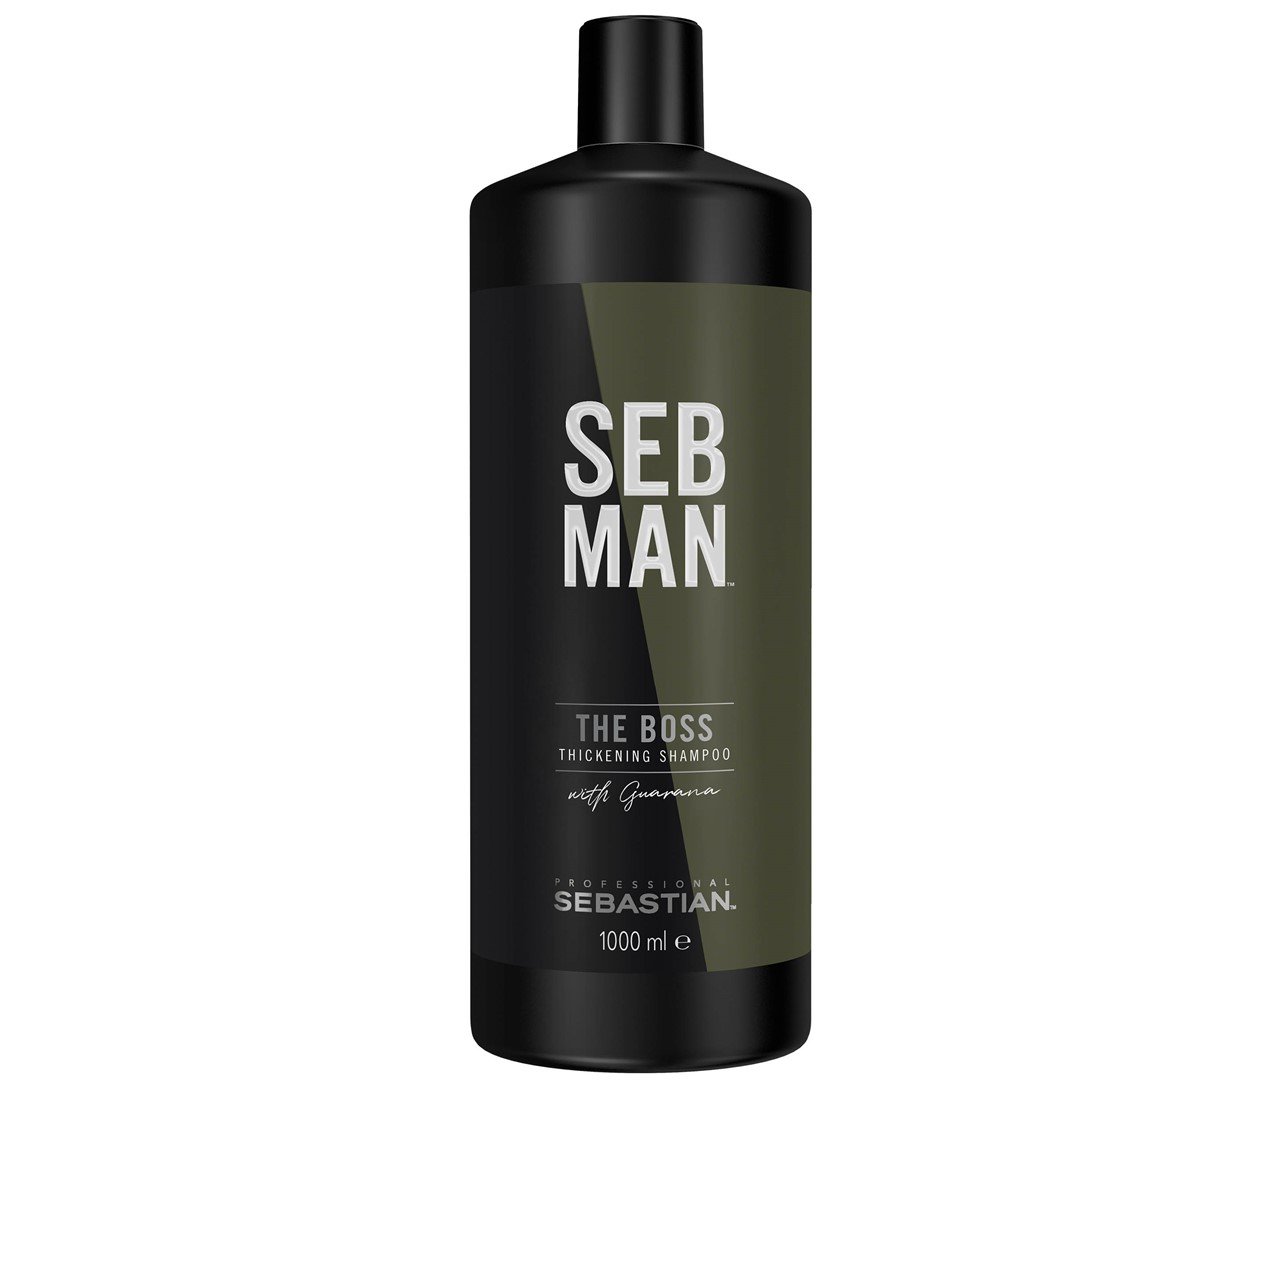 Sebastian SEB MAN The Boss Thickening Shampoo 1L (33.81fl oz)